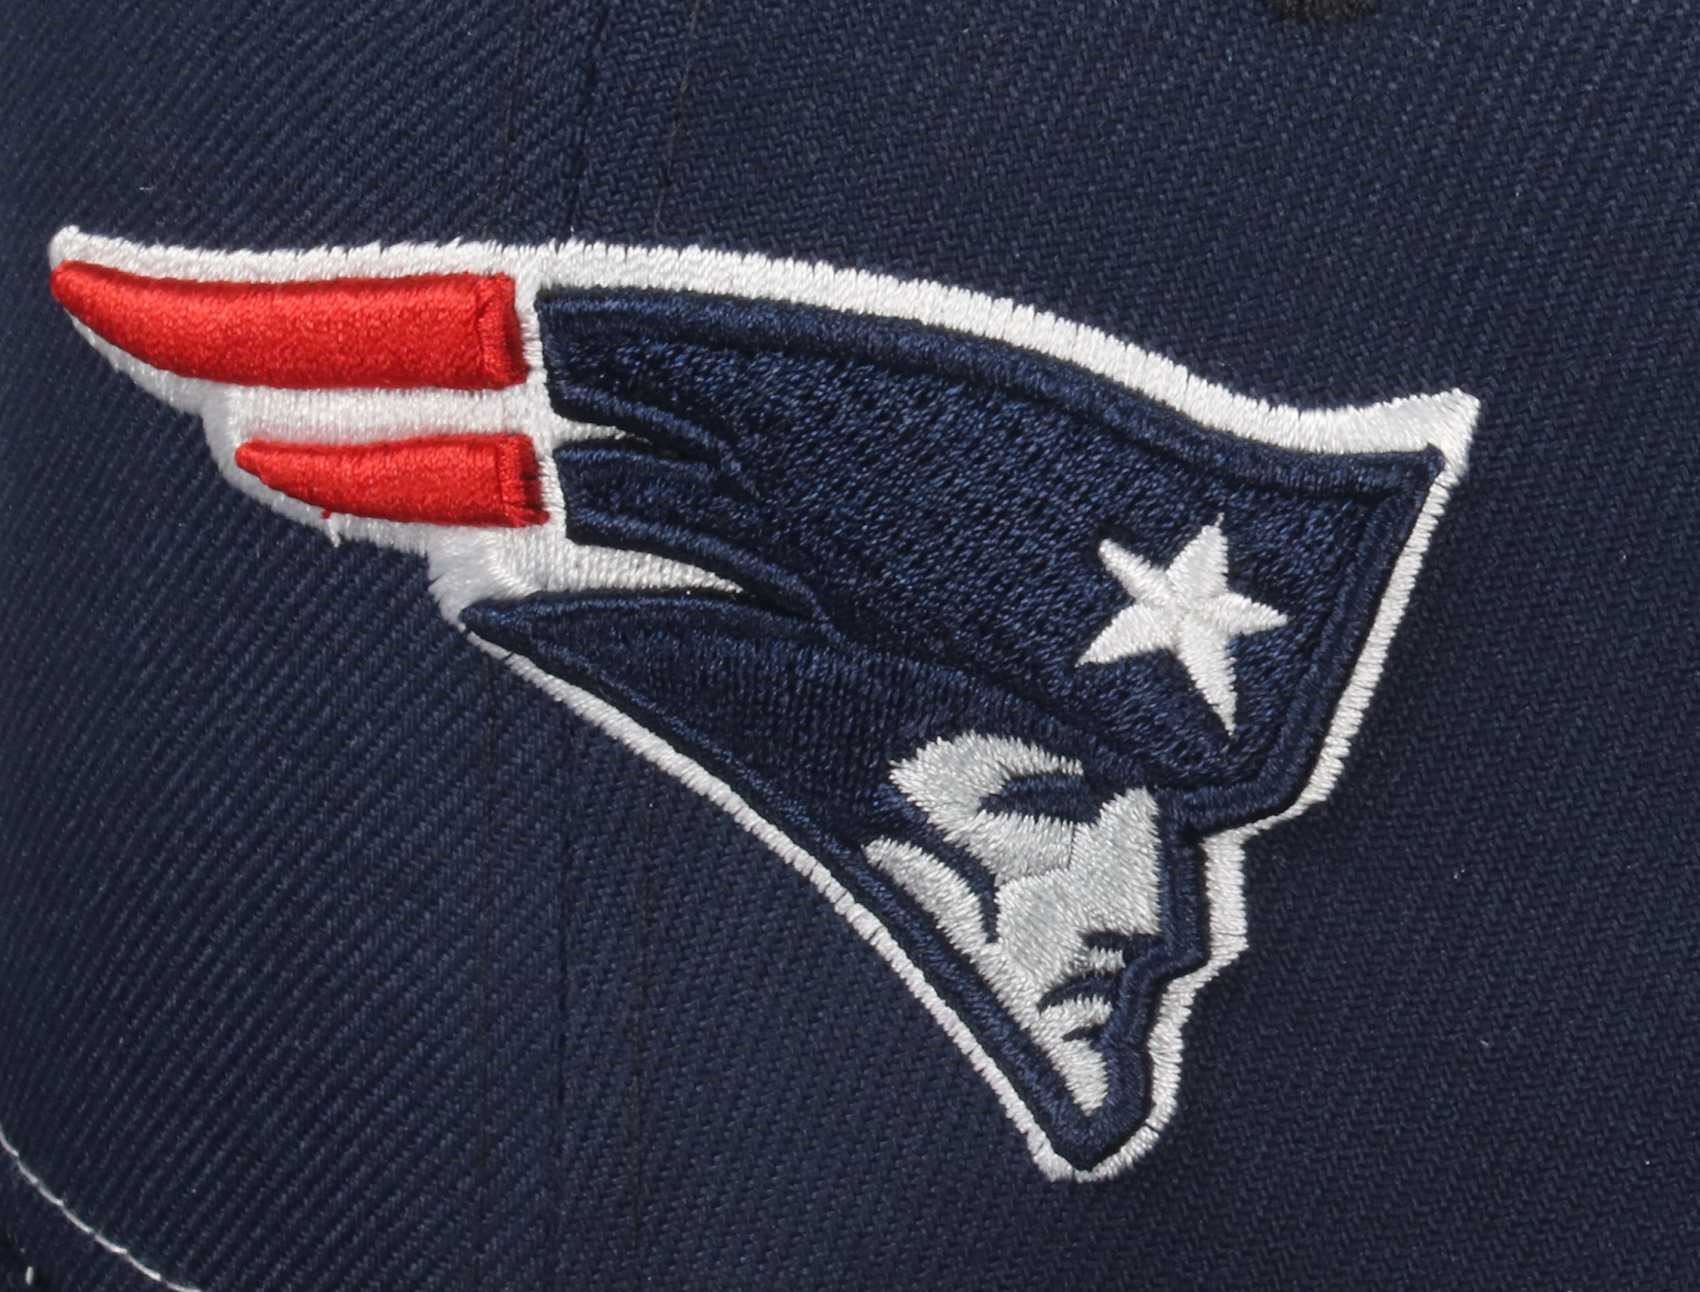 New England Patriots Trucker 9Fifty Original Fit New Era